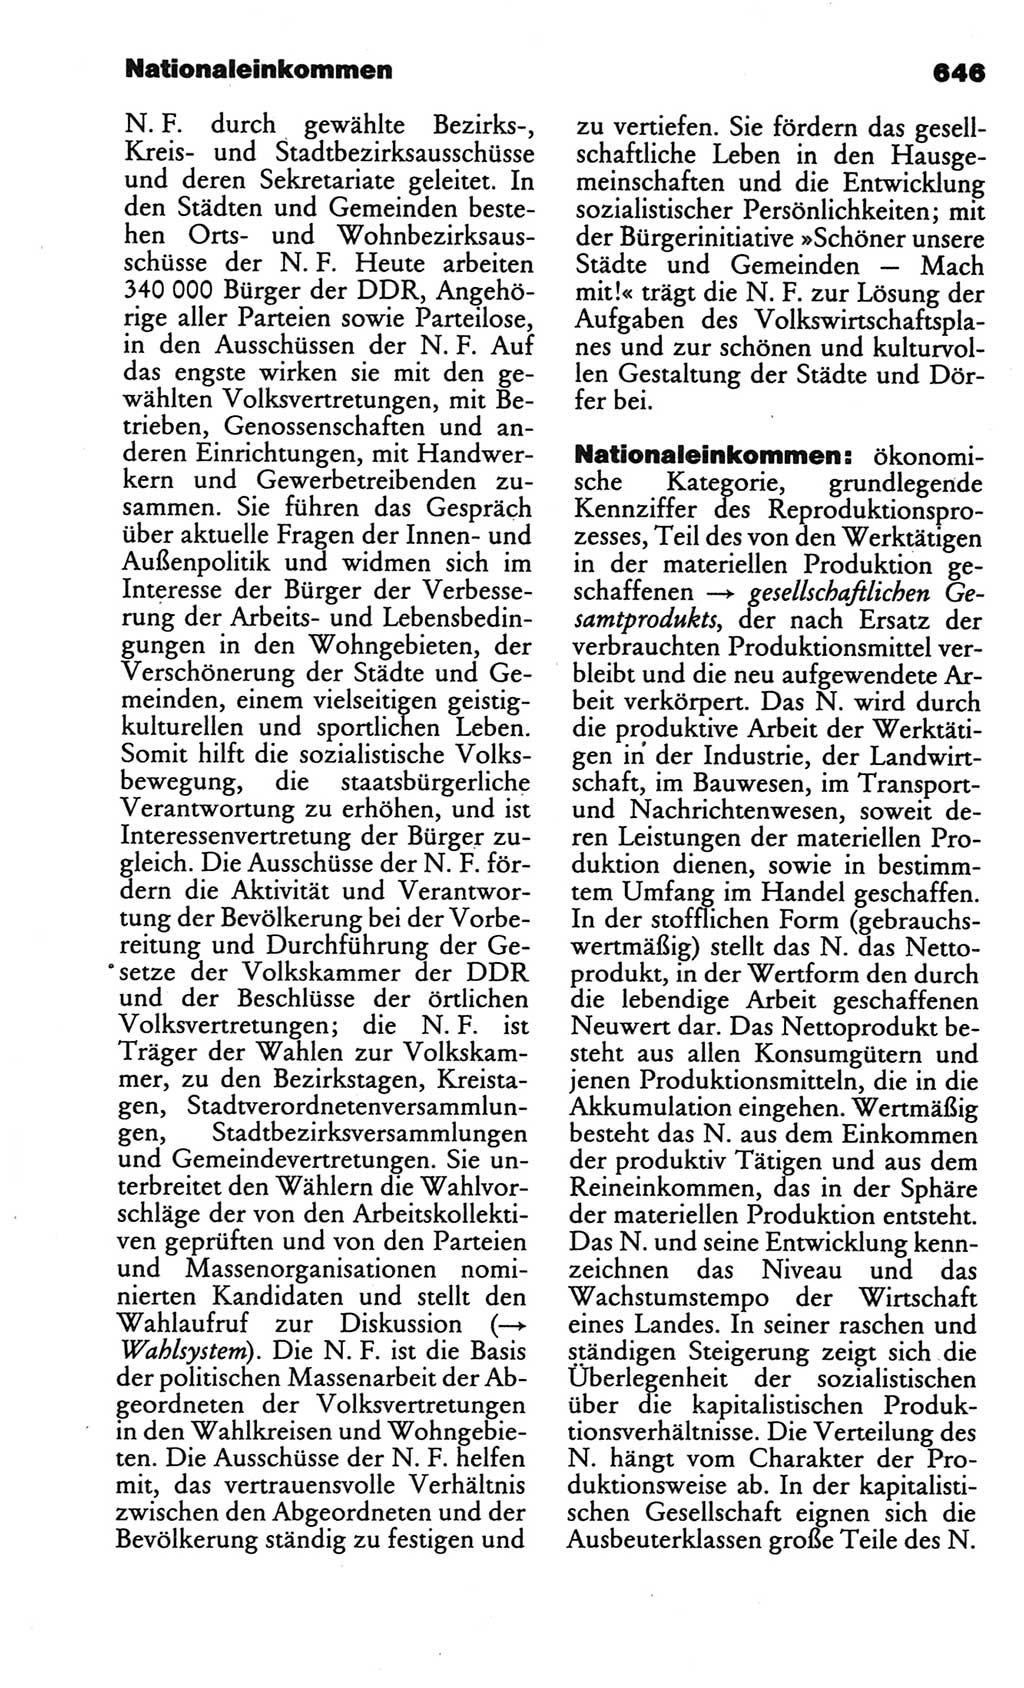 Kleines politisches Wörterbuch [Deutsche Demokratische Republik (DDR)] 1986, Seite 646 (Kl. pol. Wb. DDR 1986, S. 646)